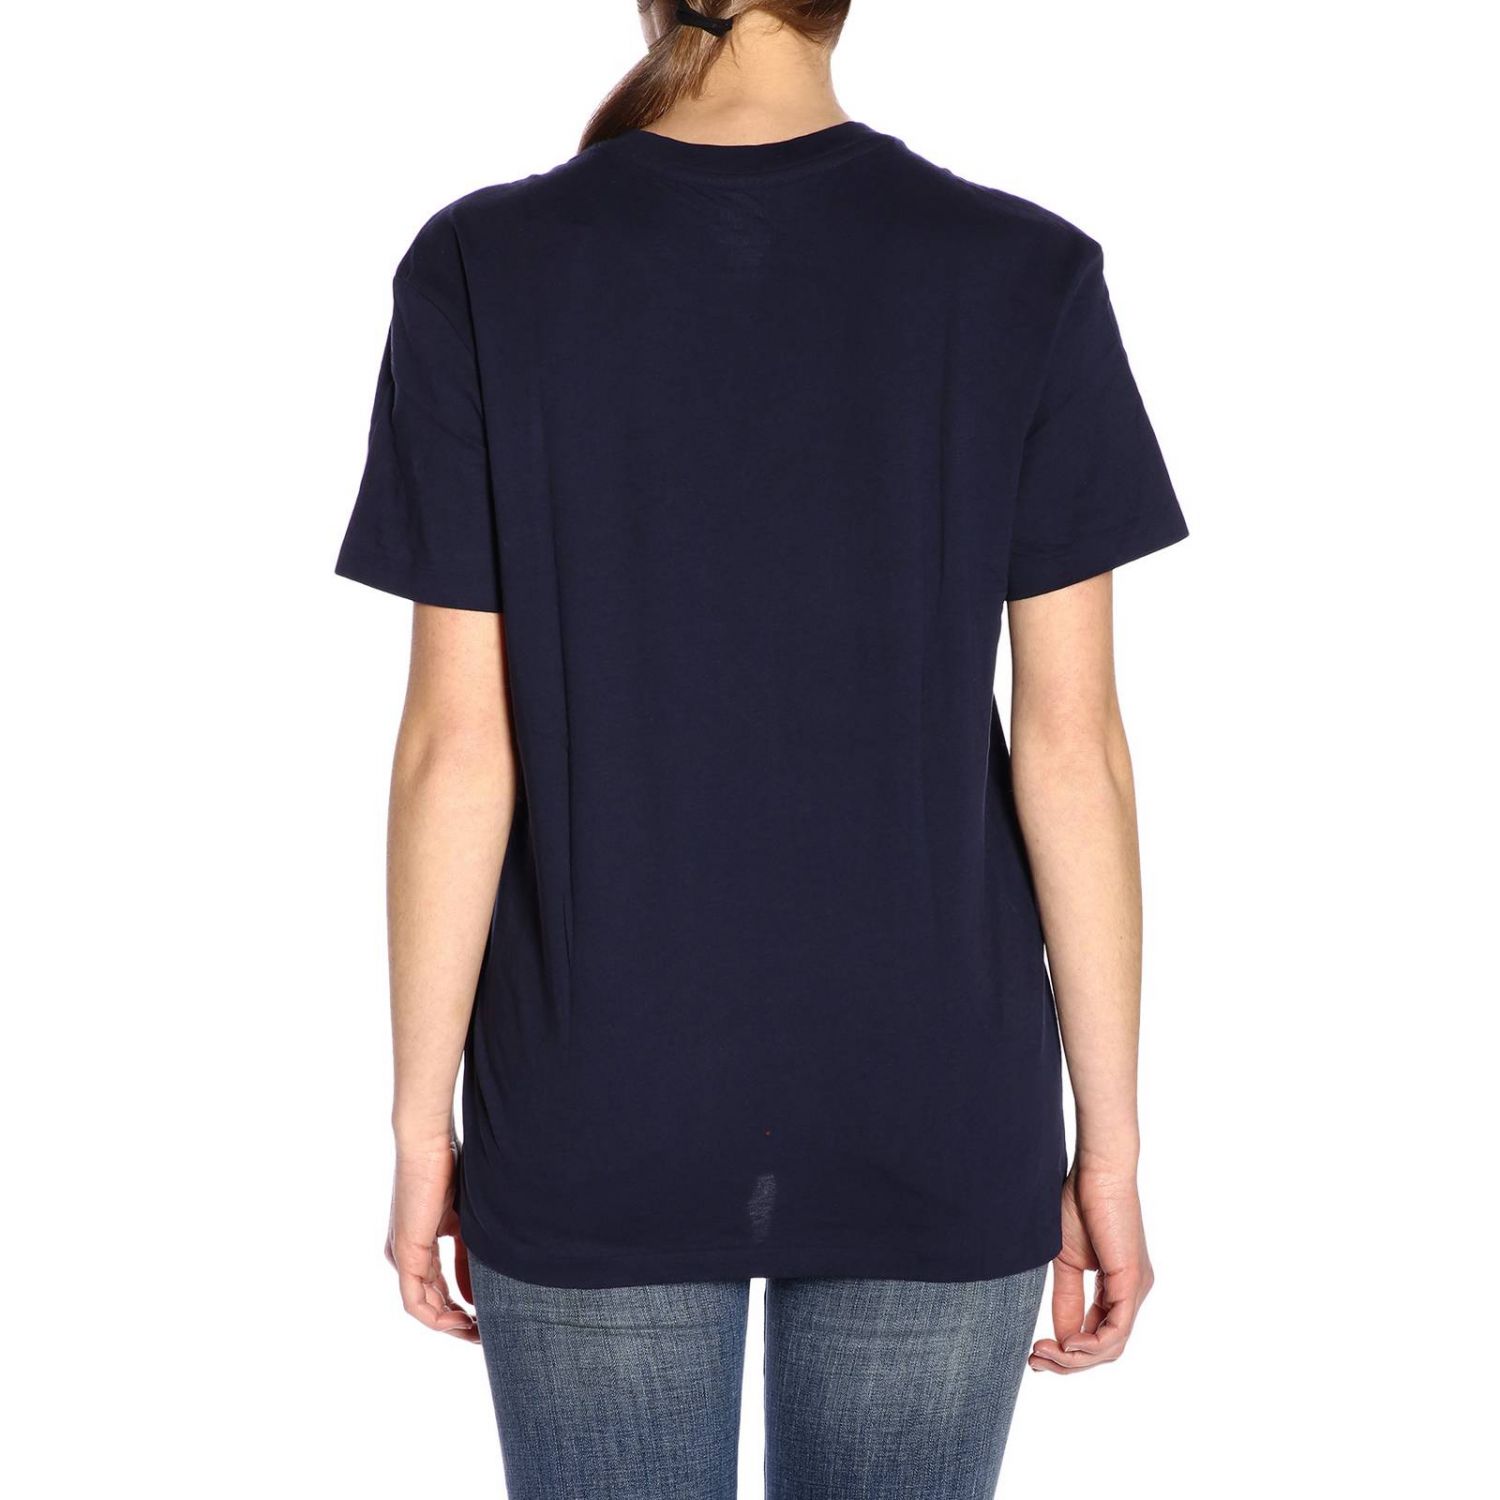 Polo Ralph Lauren Outlet: T-shirt women - Fa01 | T-Shirt Polo Ralph ...